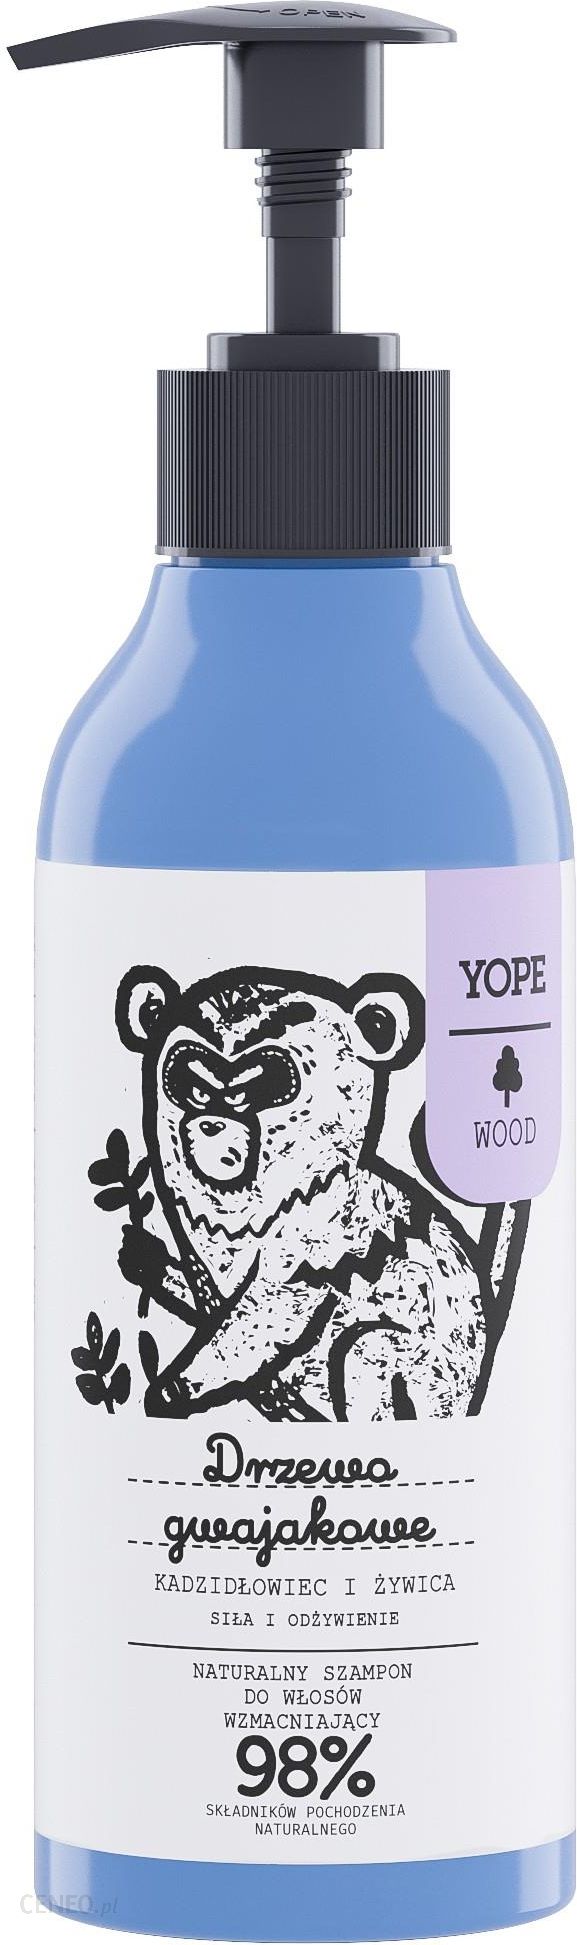 yope naturalny szampon do włosów